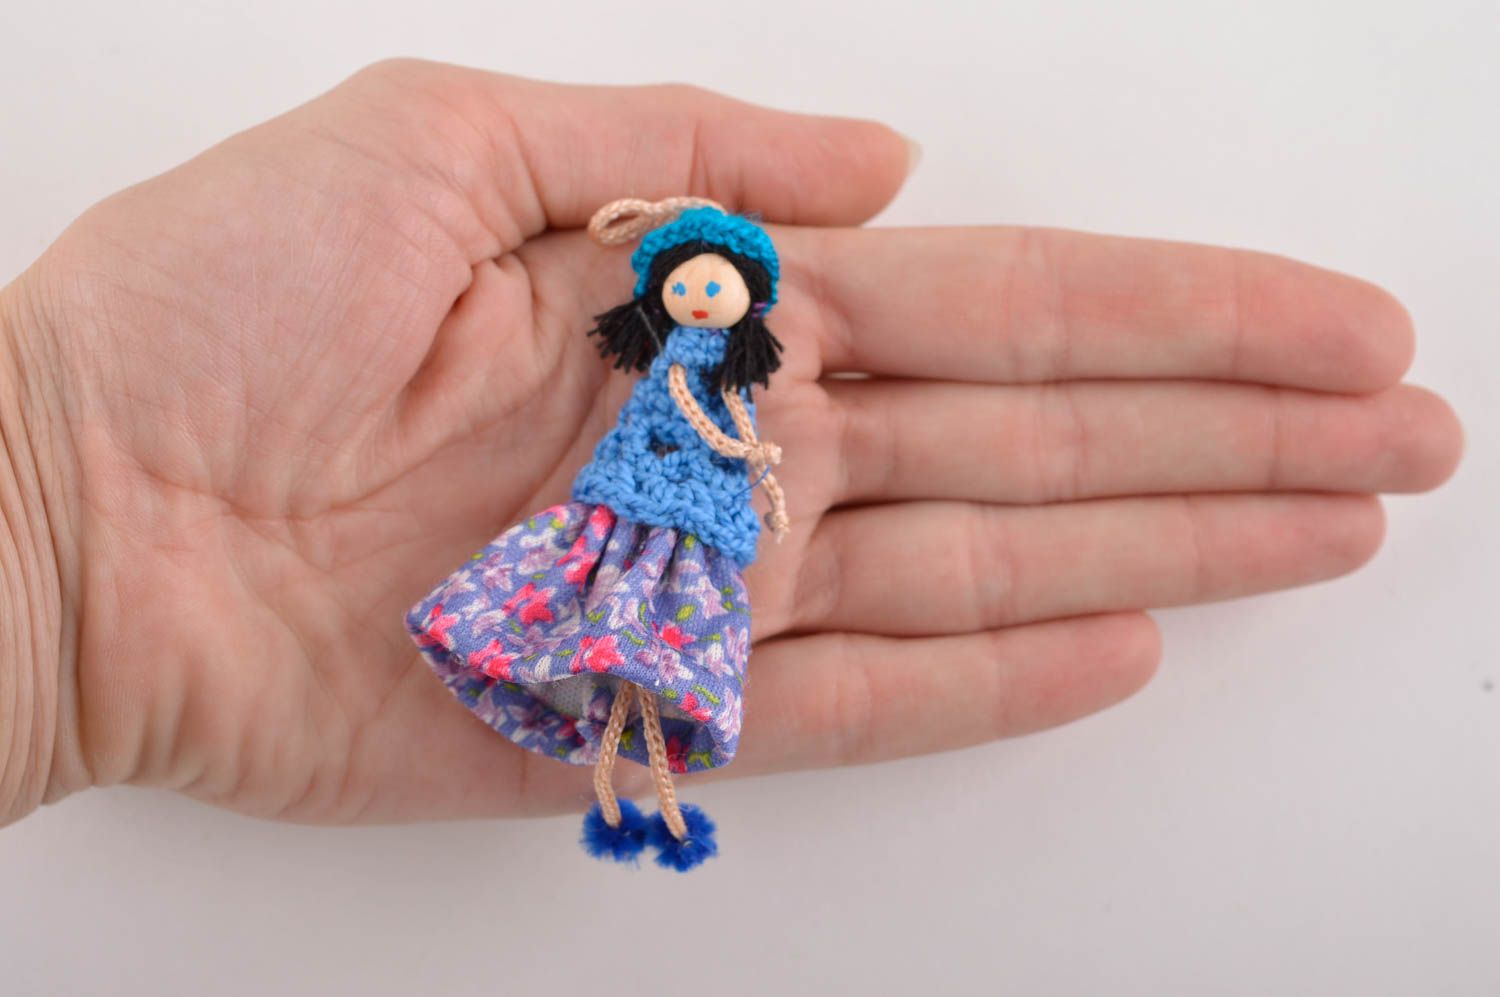 Broche hecho a mano llavero original muñeca con vestido azul accesorio de moda foto 3